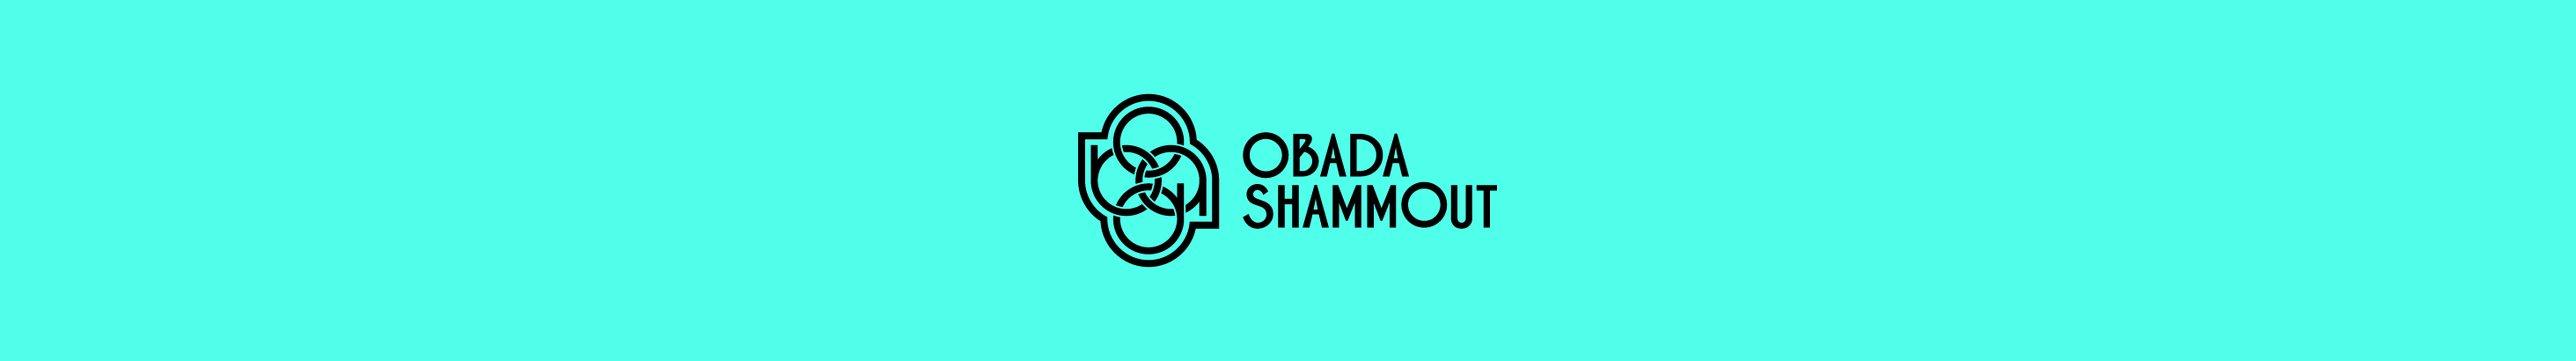 Obada Shammout profil başlığı